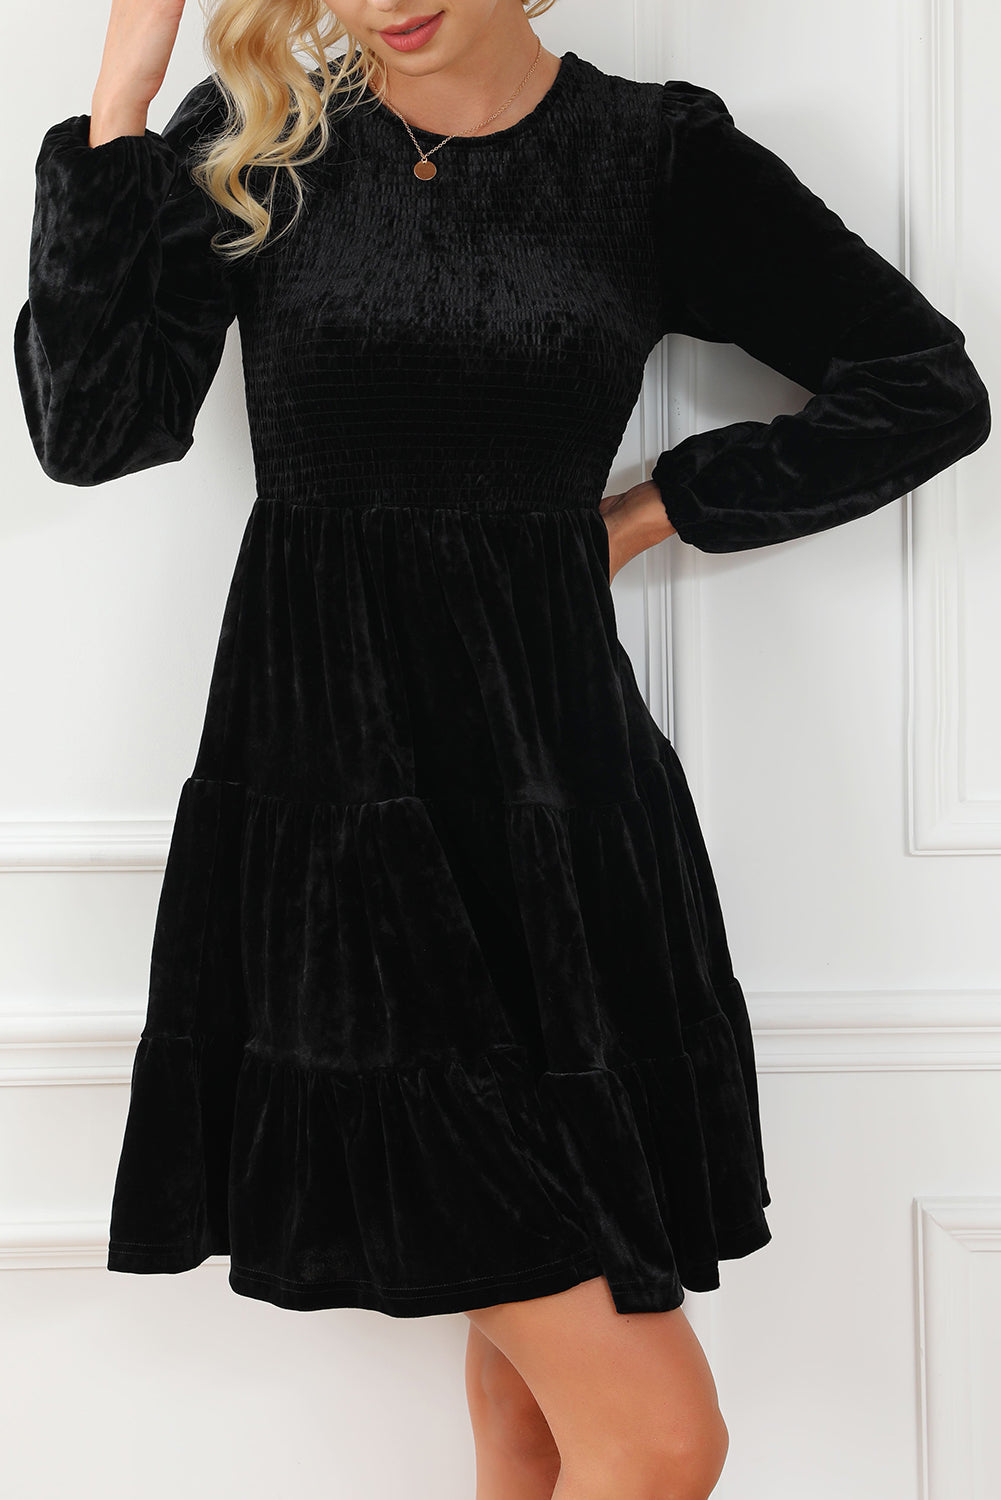 Schwarzes, gesmoktes Minikleid aus Samt mit Puffärmeln und Rüschen